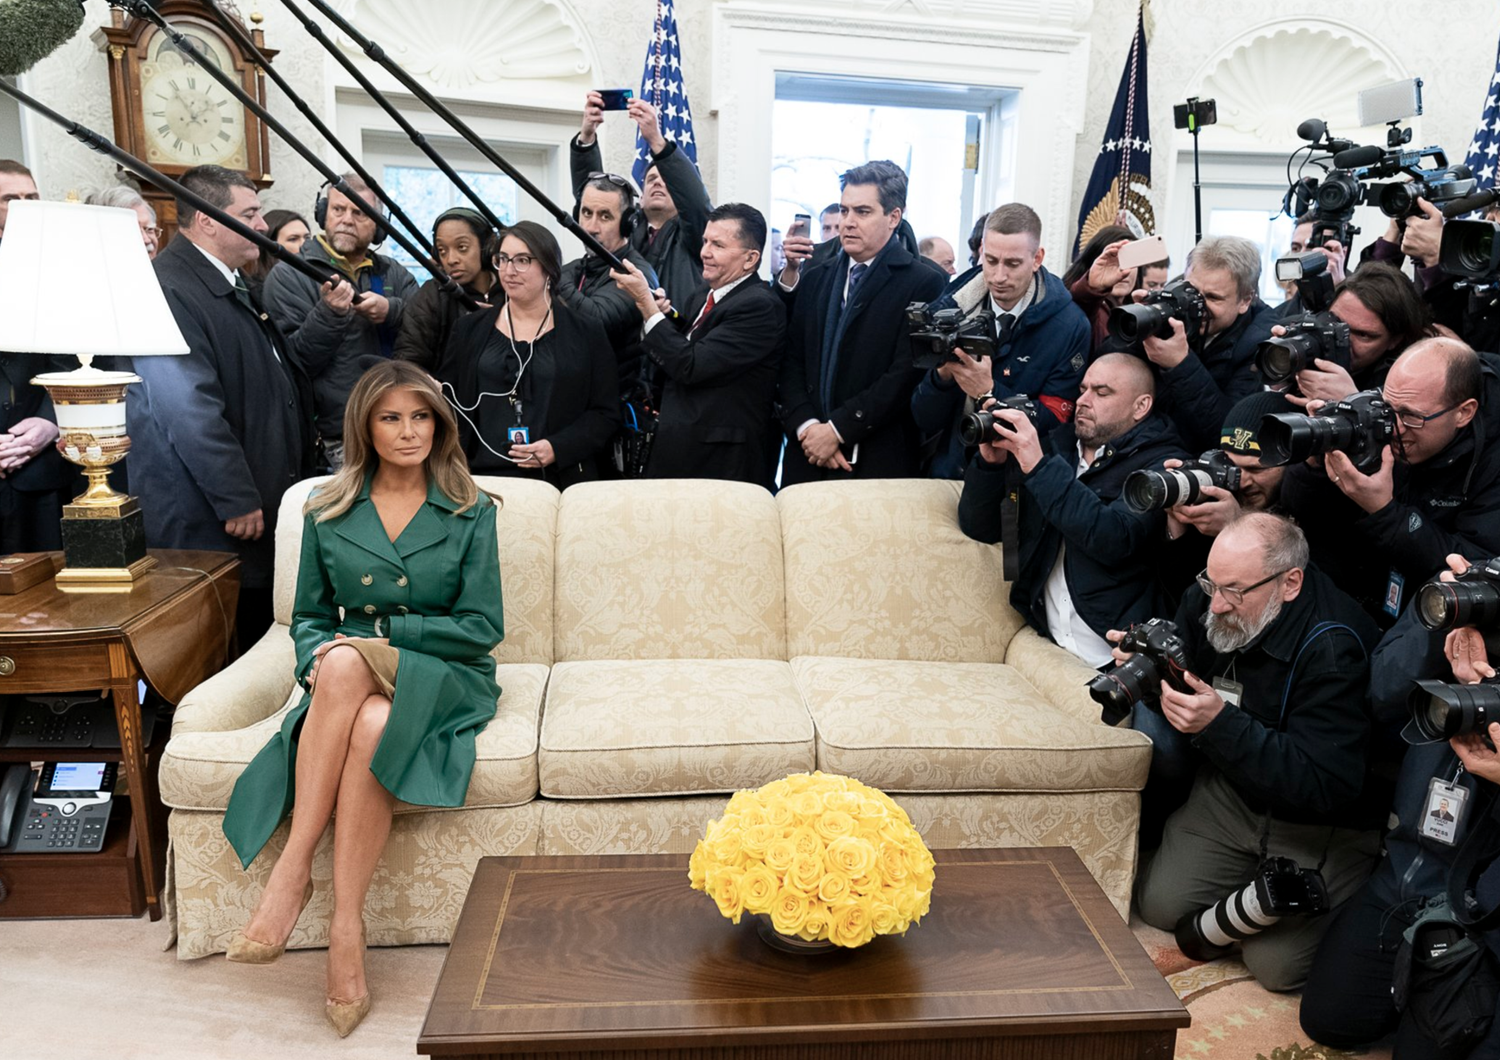 La foto che la Casa Bianca ha postato per il compleanno di Melania Trump